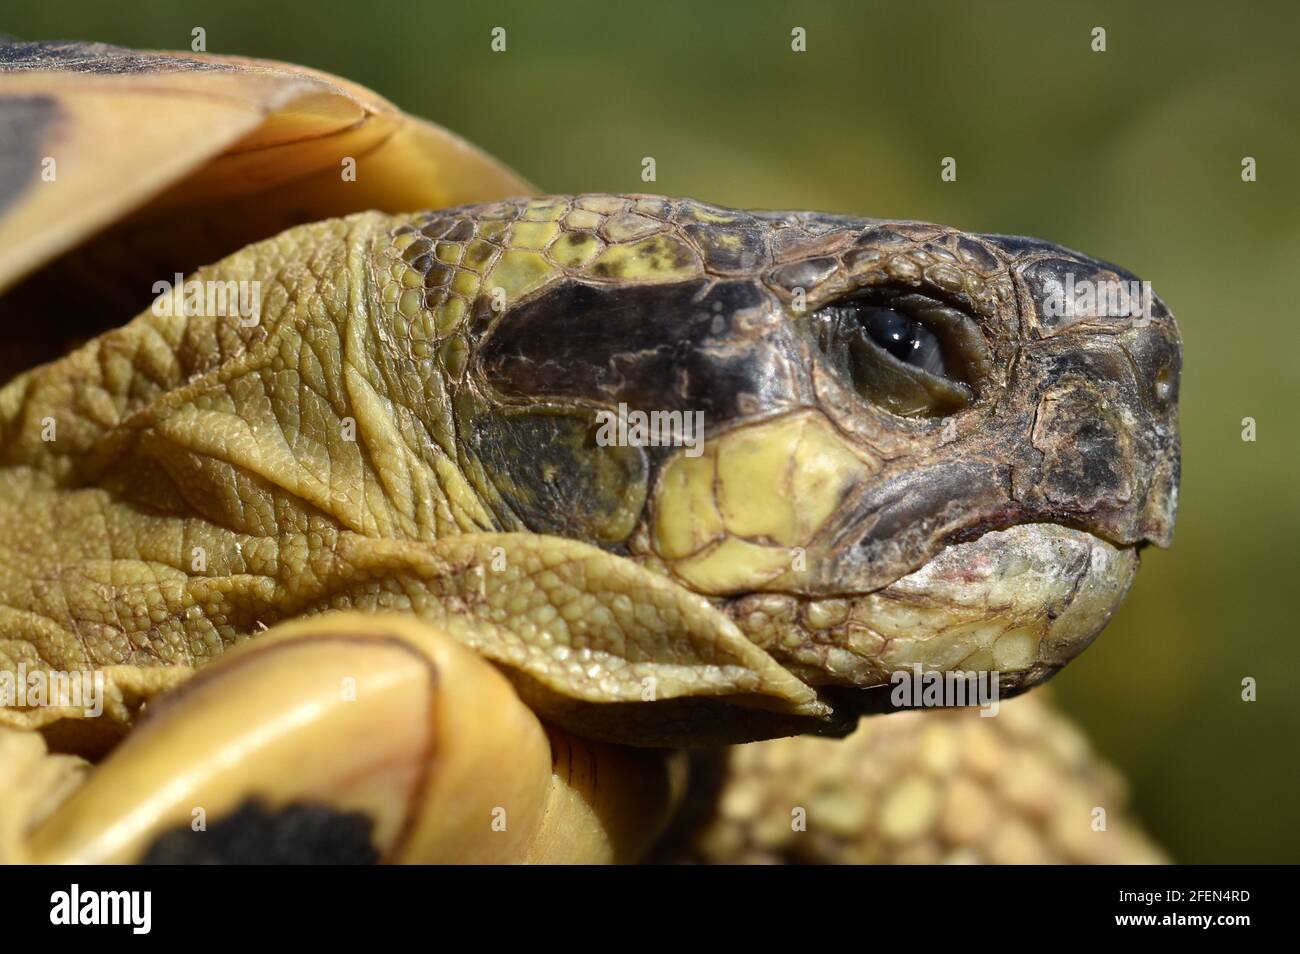 Frankreich, südöstlich, terrestrische Schildkröte des mittelmeerraums, ist dieses Reptil gut an das Klima der Region angepasst. Stockfoto